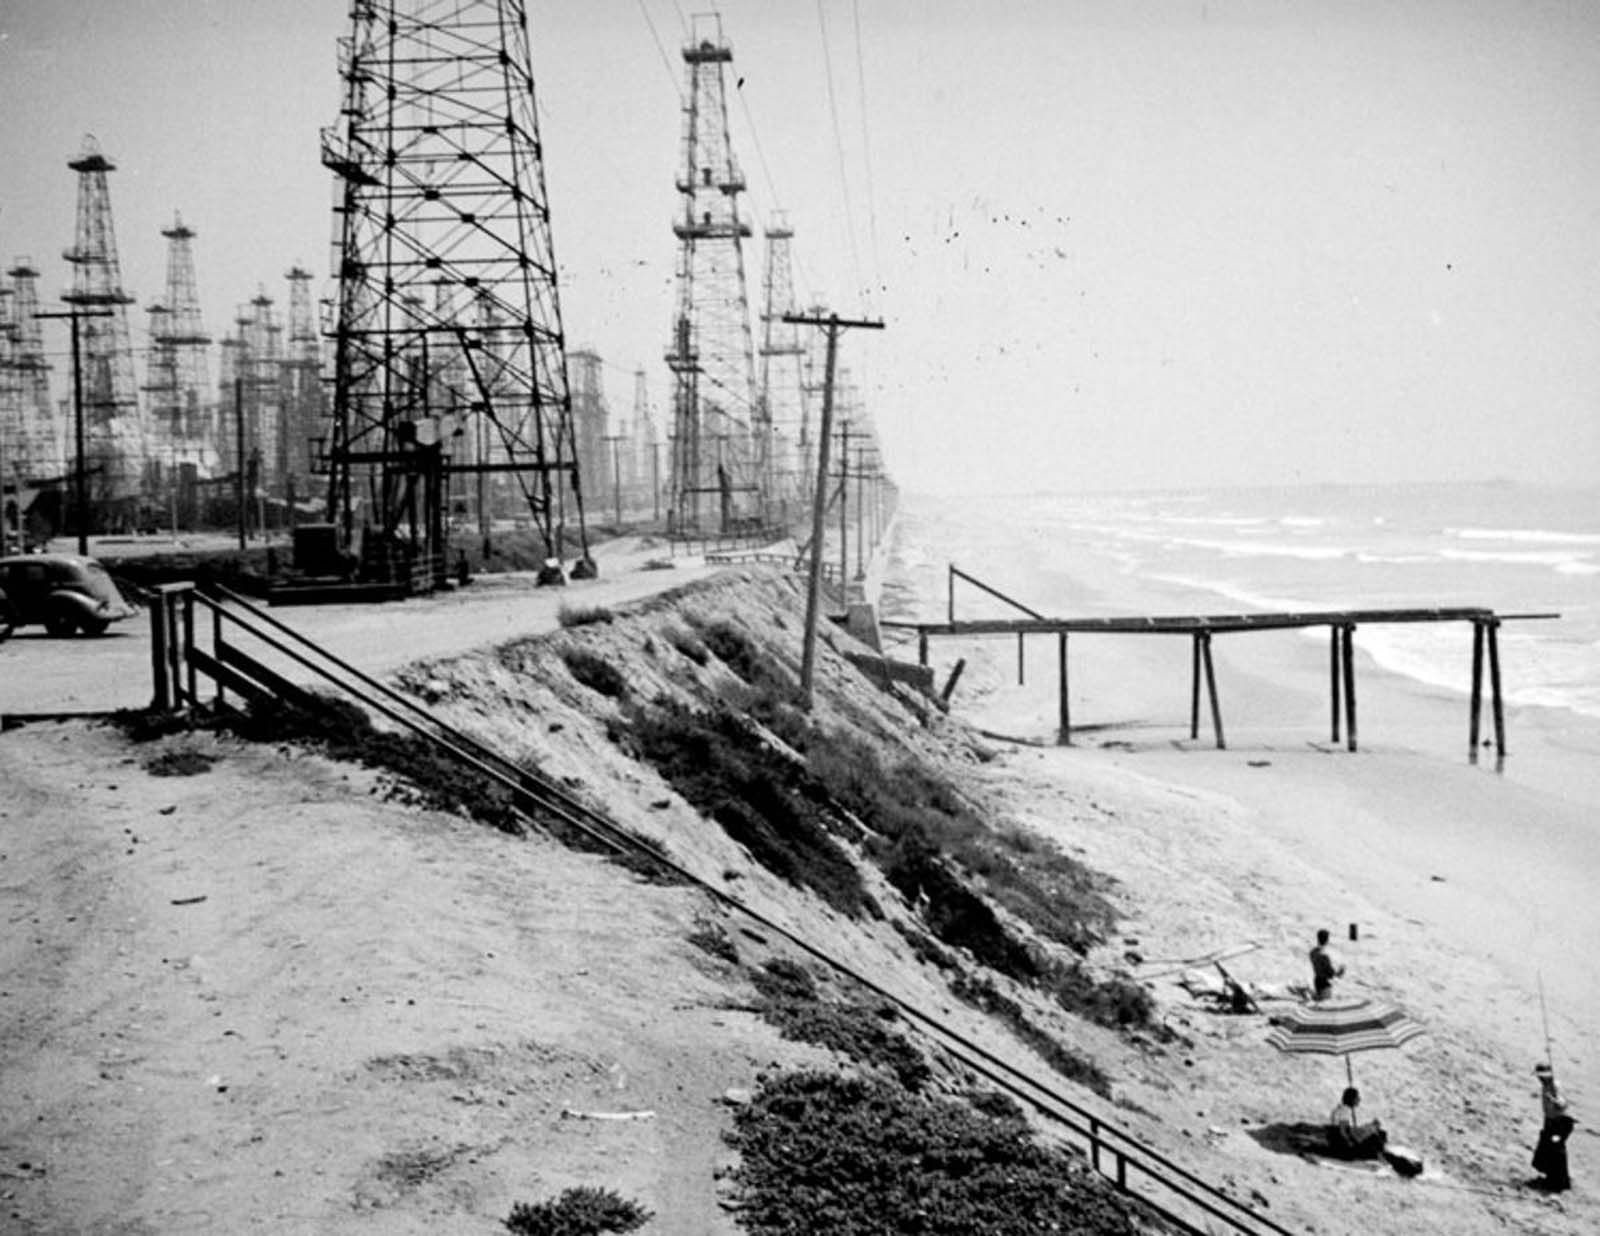 Oil derricks and bathers on Huntington Beach, 1937